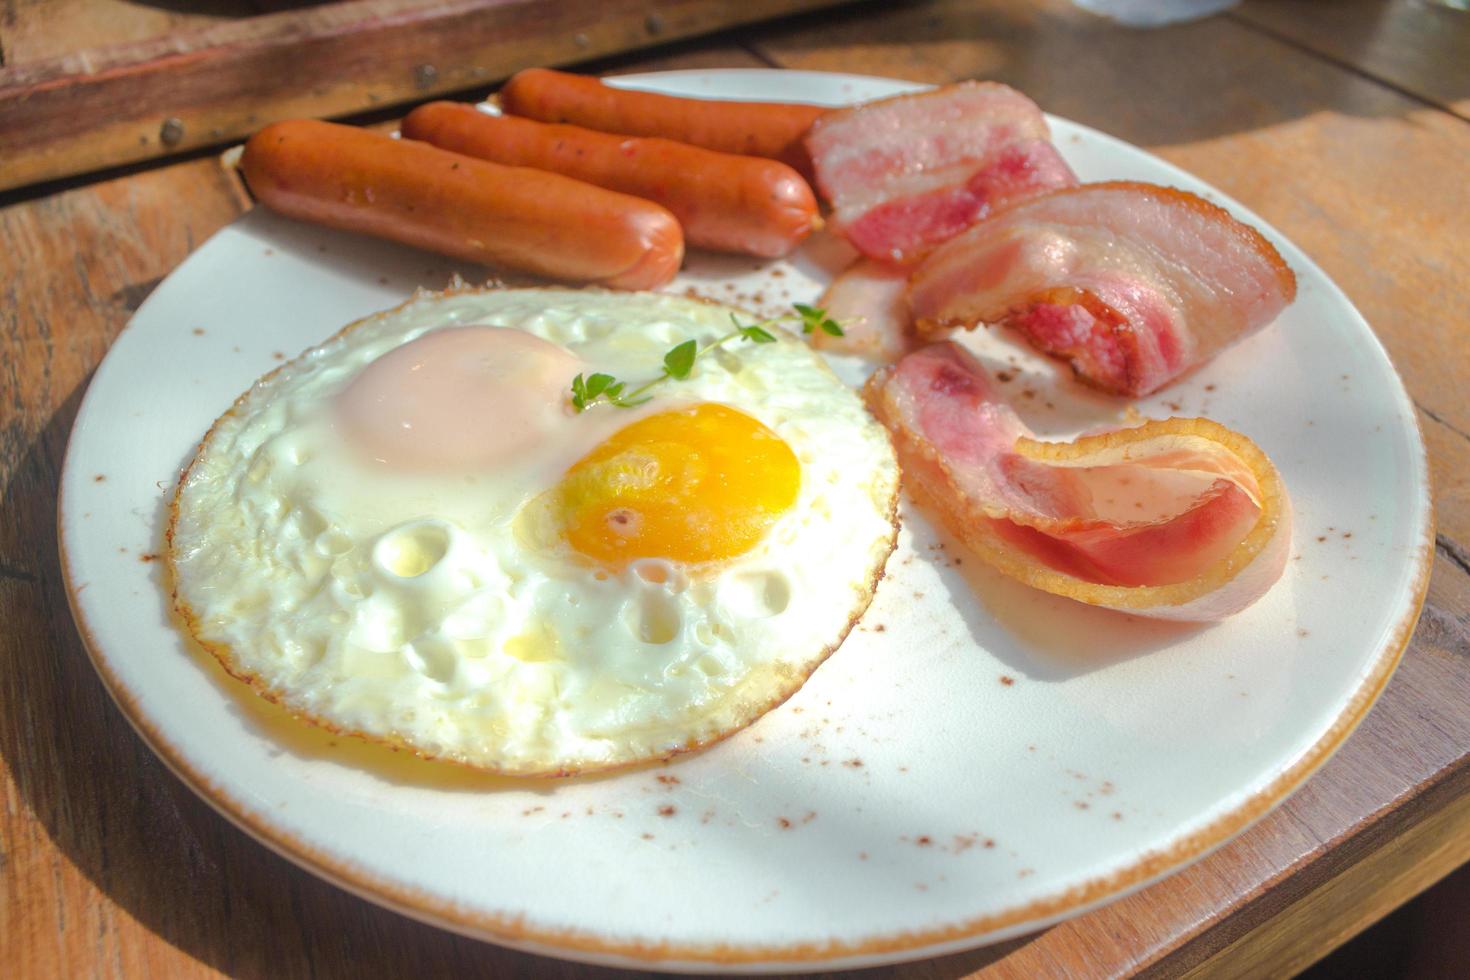 bacon, ovos fritos e salsicha no prato branco e mesa de madeira foto